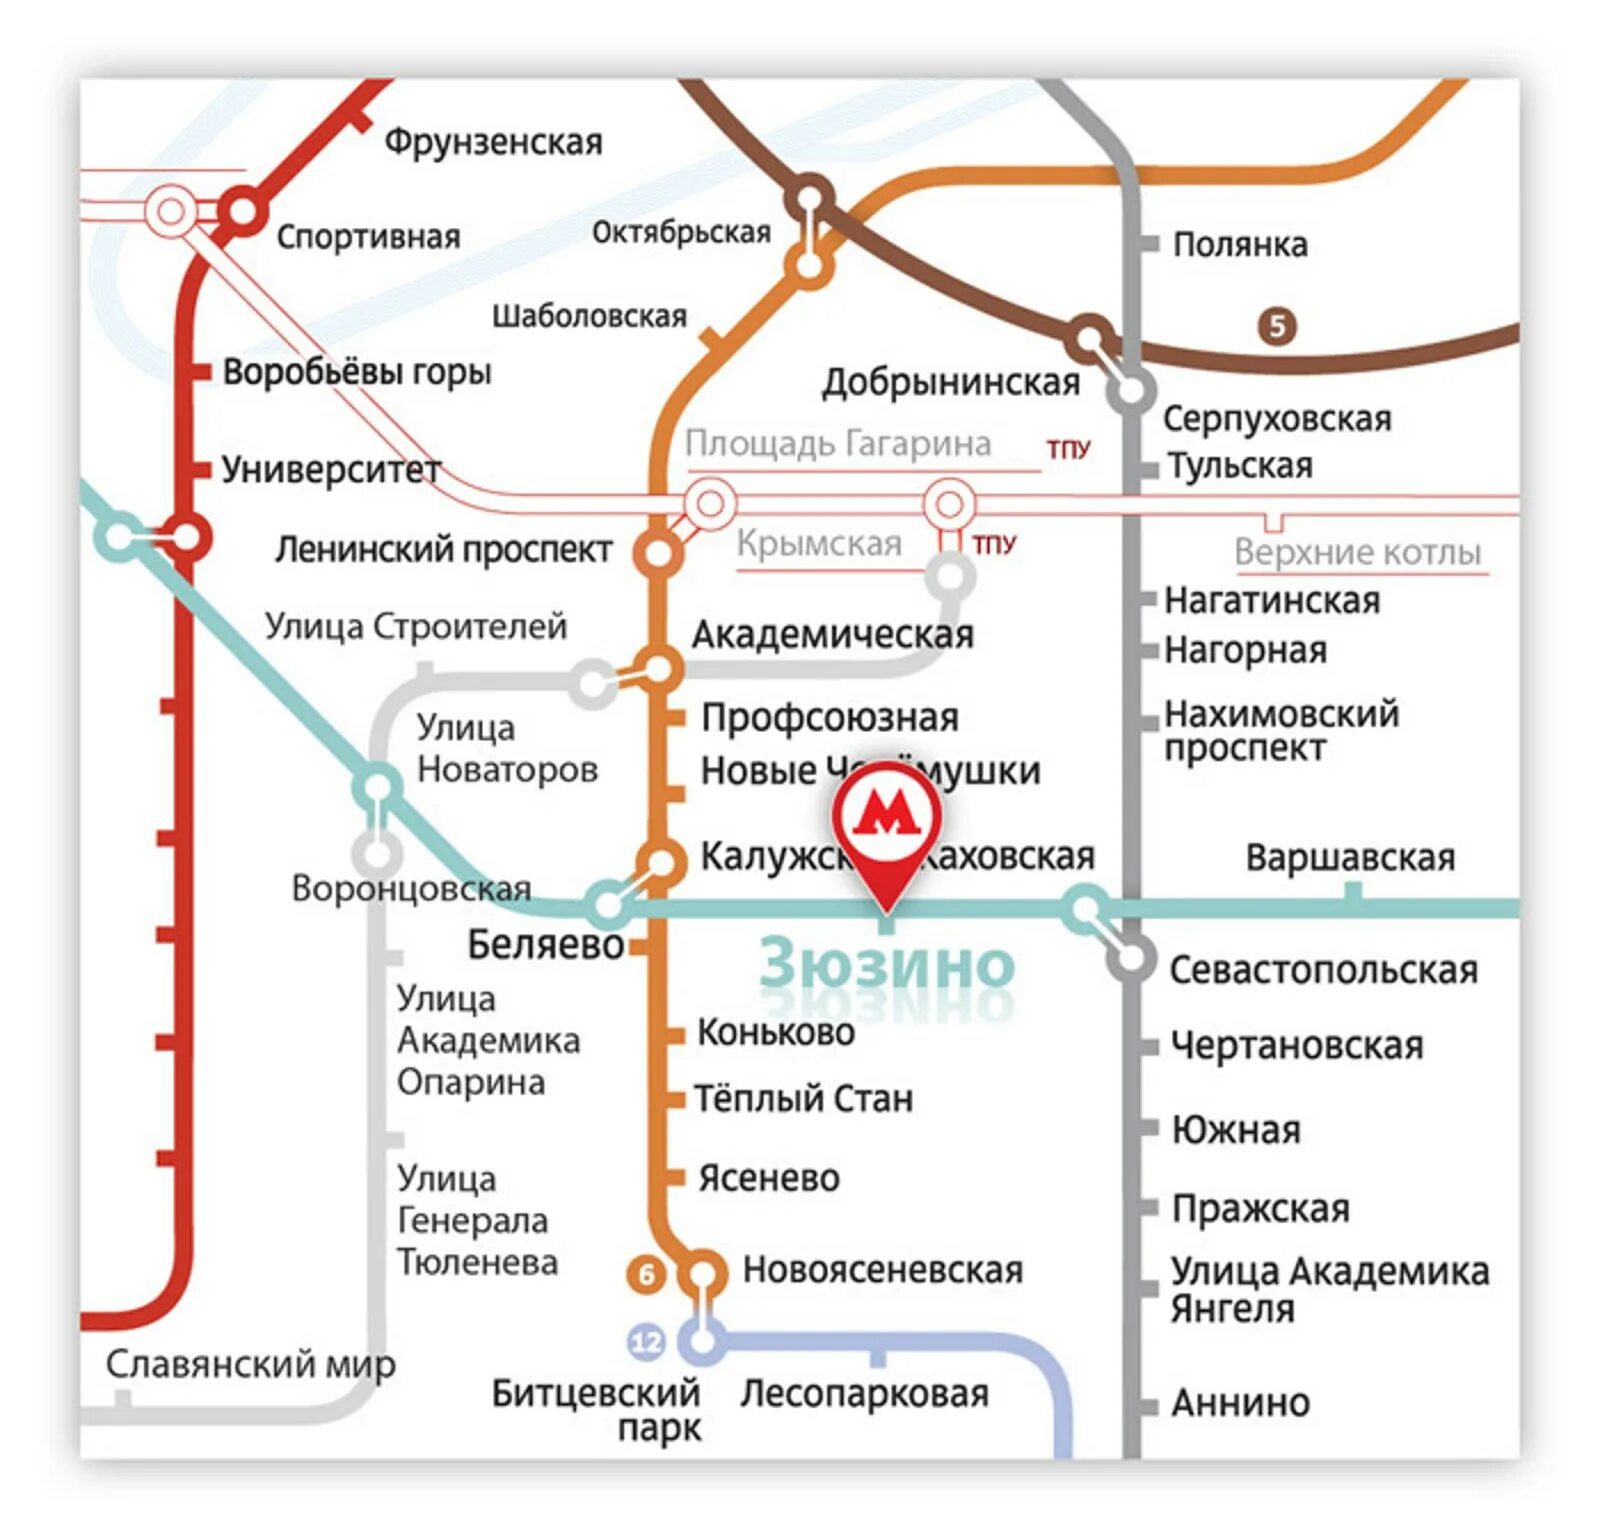 Схема зюзино. Зюзино станция метро на схеме. Схема метро Москвы станция Зюзино на карте. Схема метрополитена Зюзино. Метро Зюзино на карте метрополитена.